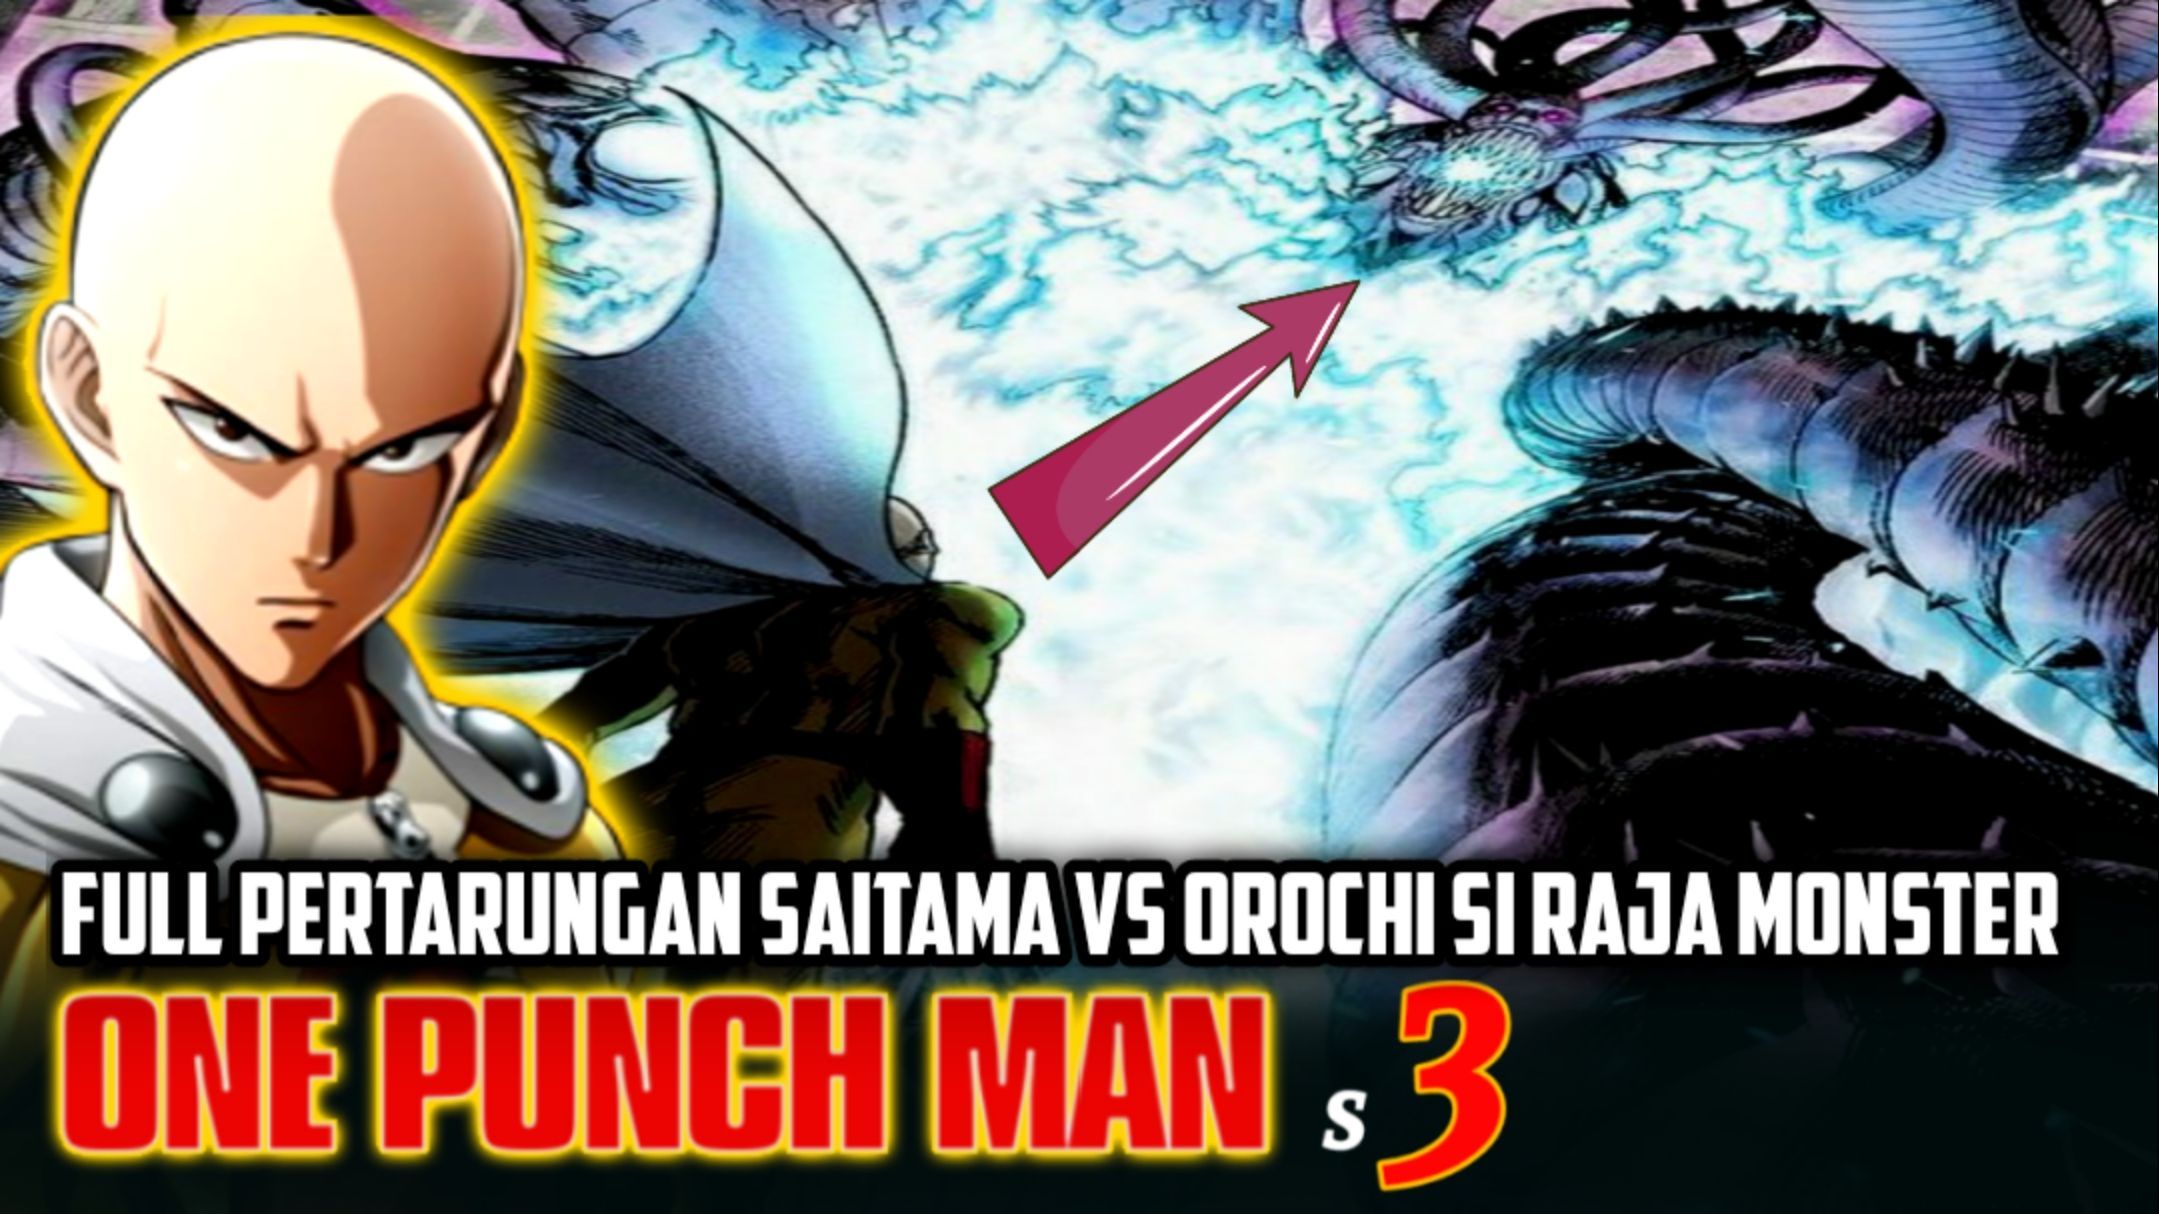 ONE PUNCH MAN Temporada 3 (Adelanto Completo): Cuando sale? - Saitama VS  Orochi 